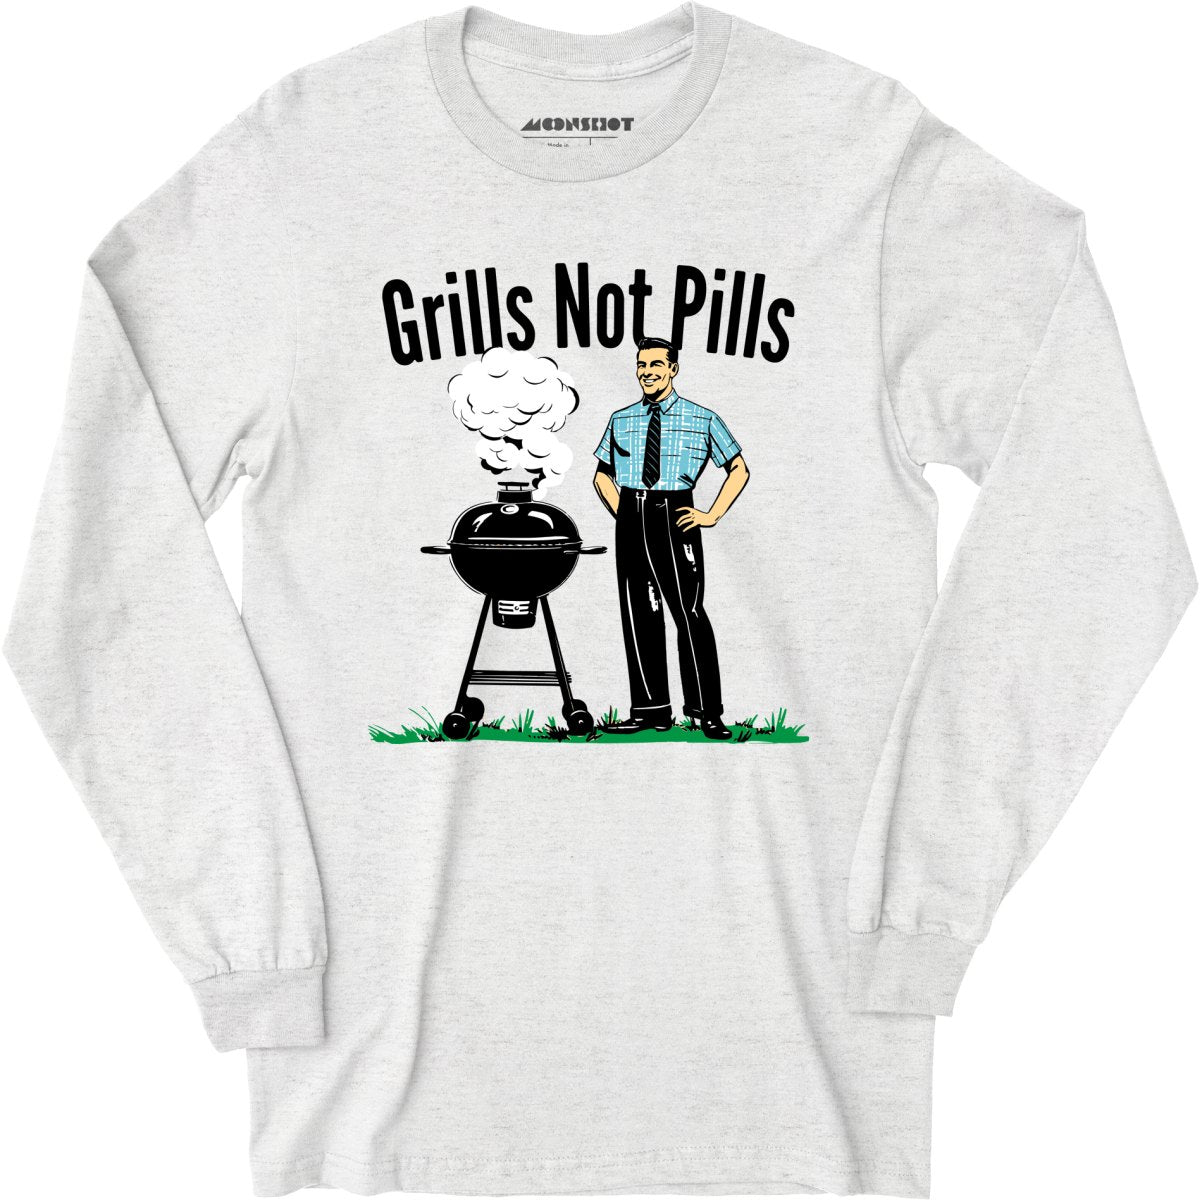 Grills Not Pills - Long Sleeve T-Shirt